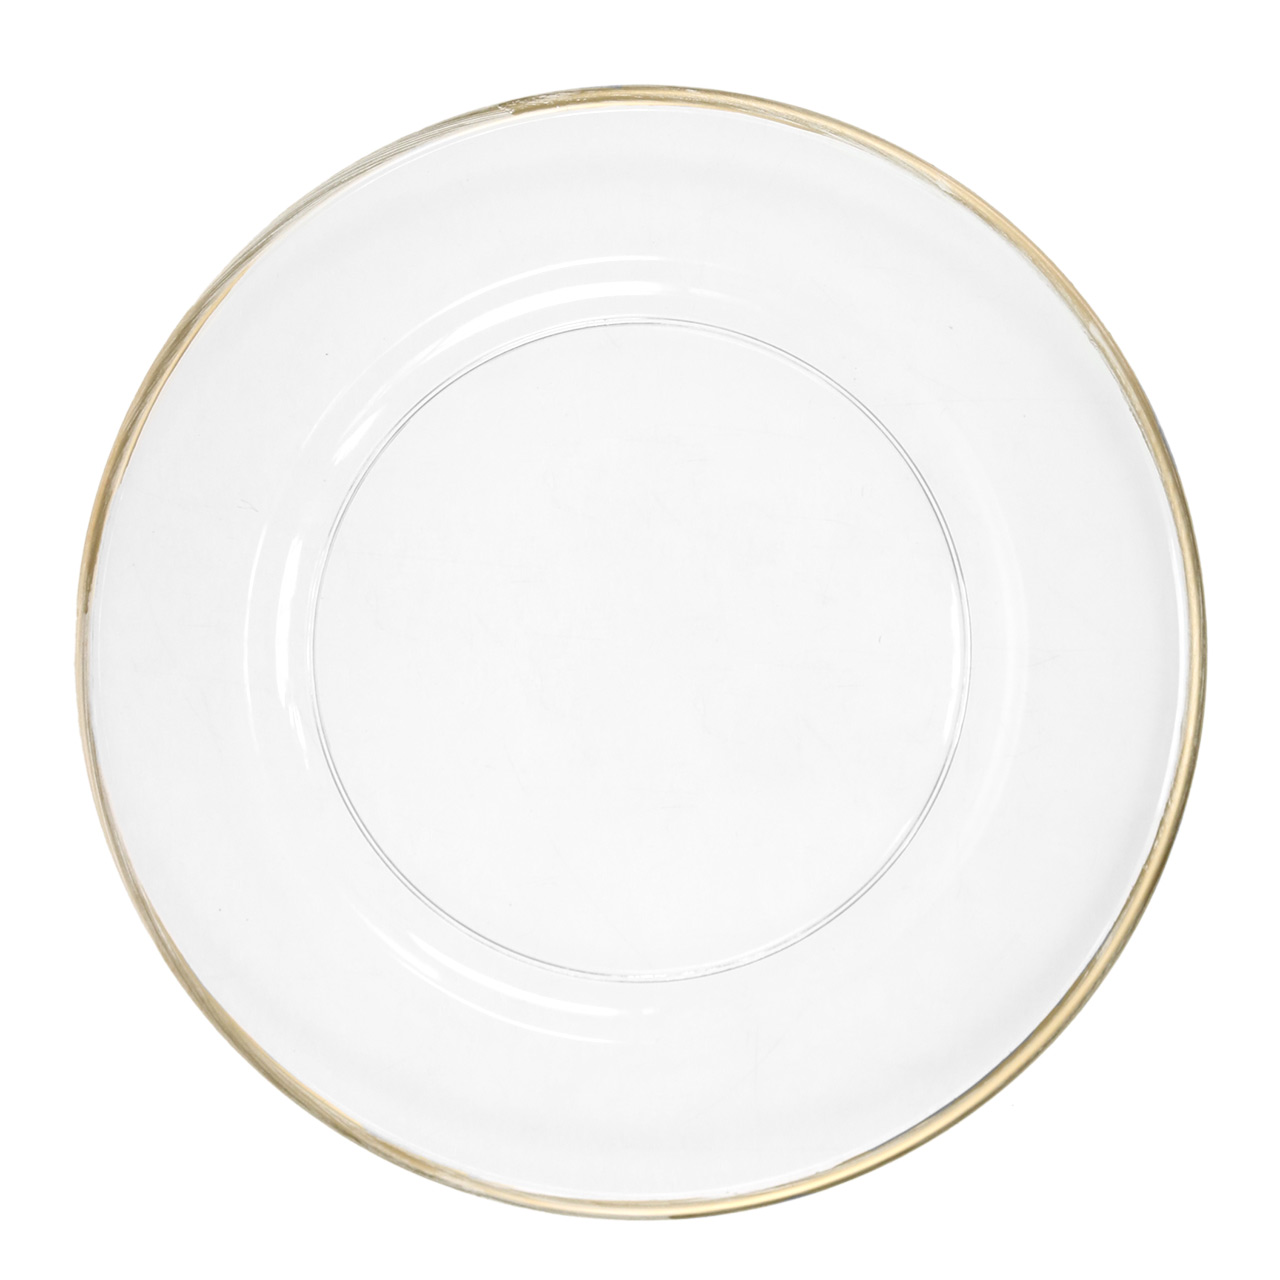 Assiette décorative bord doré plastique transparent  Ø33cm-68365